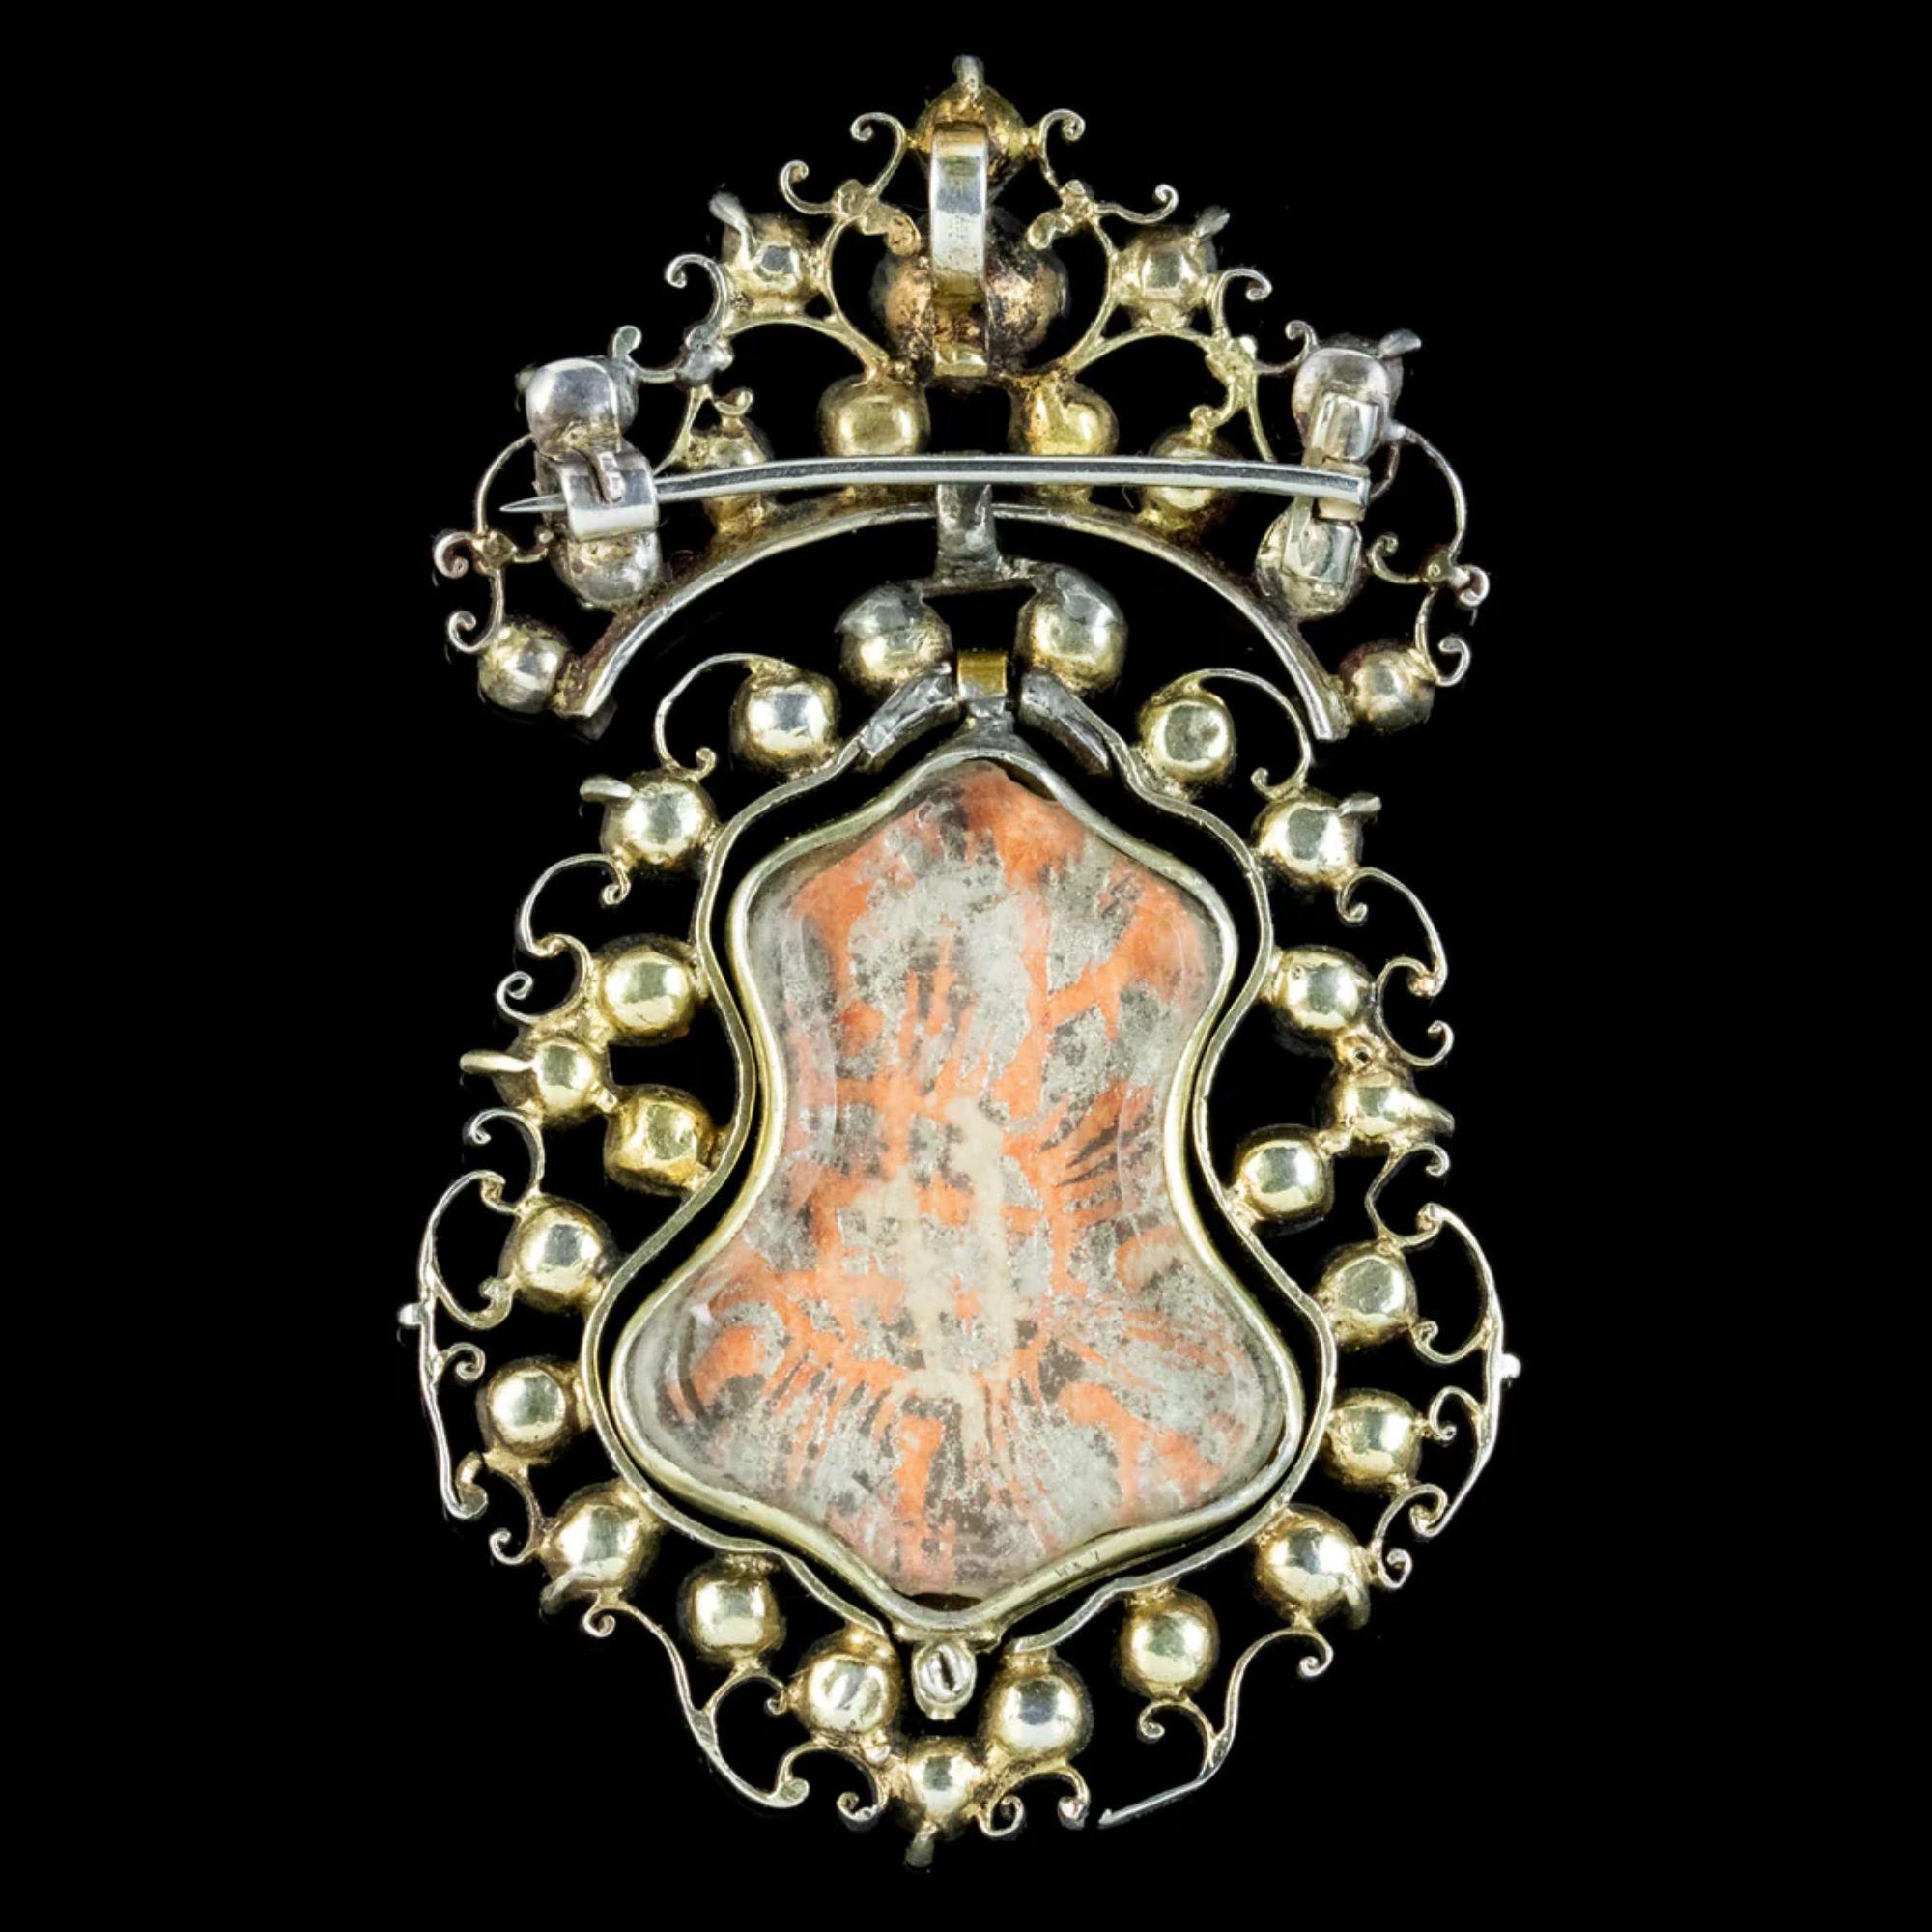 Rare broche/pendentif Queen Anne du début des années 1700, ornée d'un ensemble de pierres colorées en pâte de verre de taille ancienne, réparties sur une galerie en argent ajouré avec un travail de métal en forme de rinceaux.

Un médaillon double